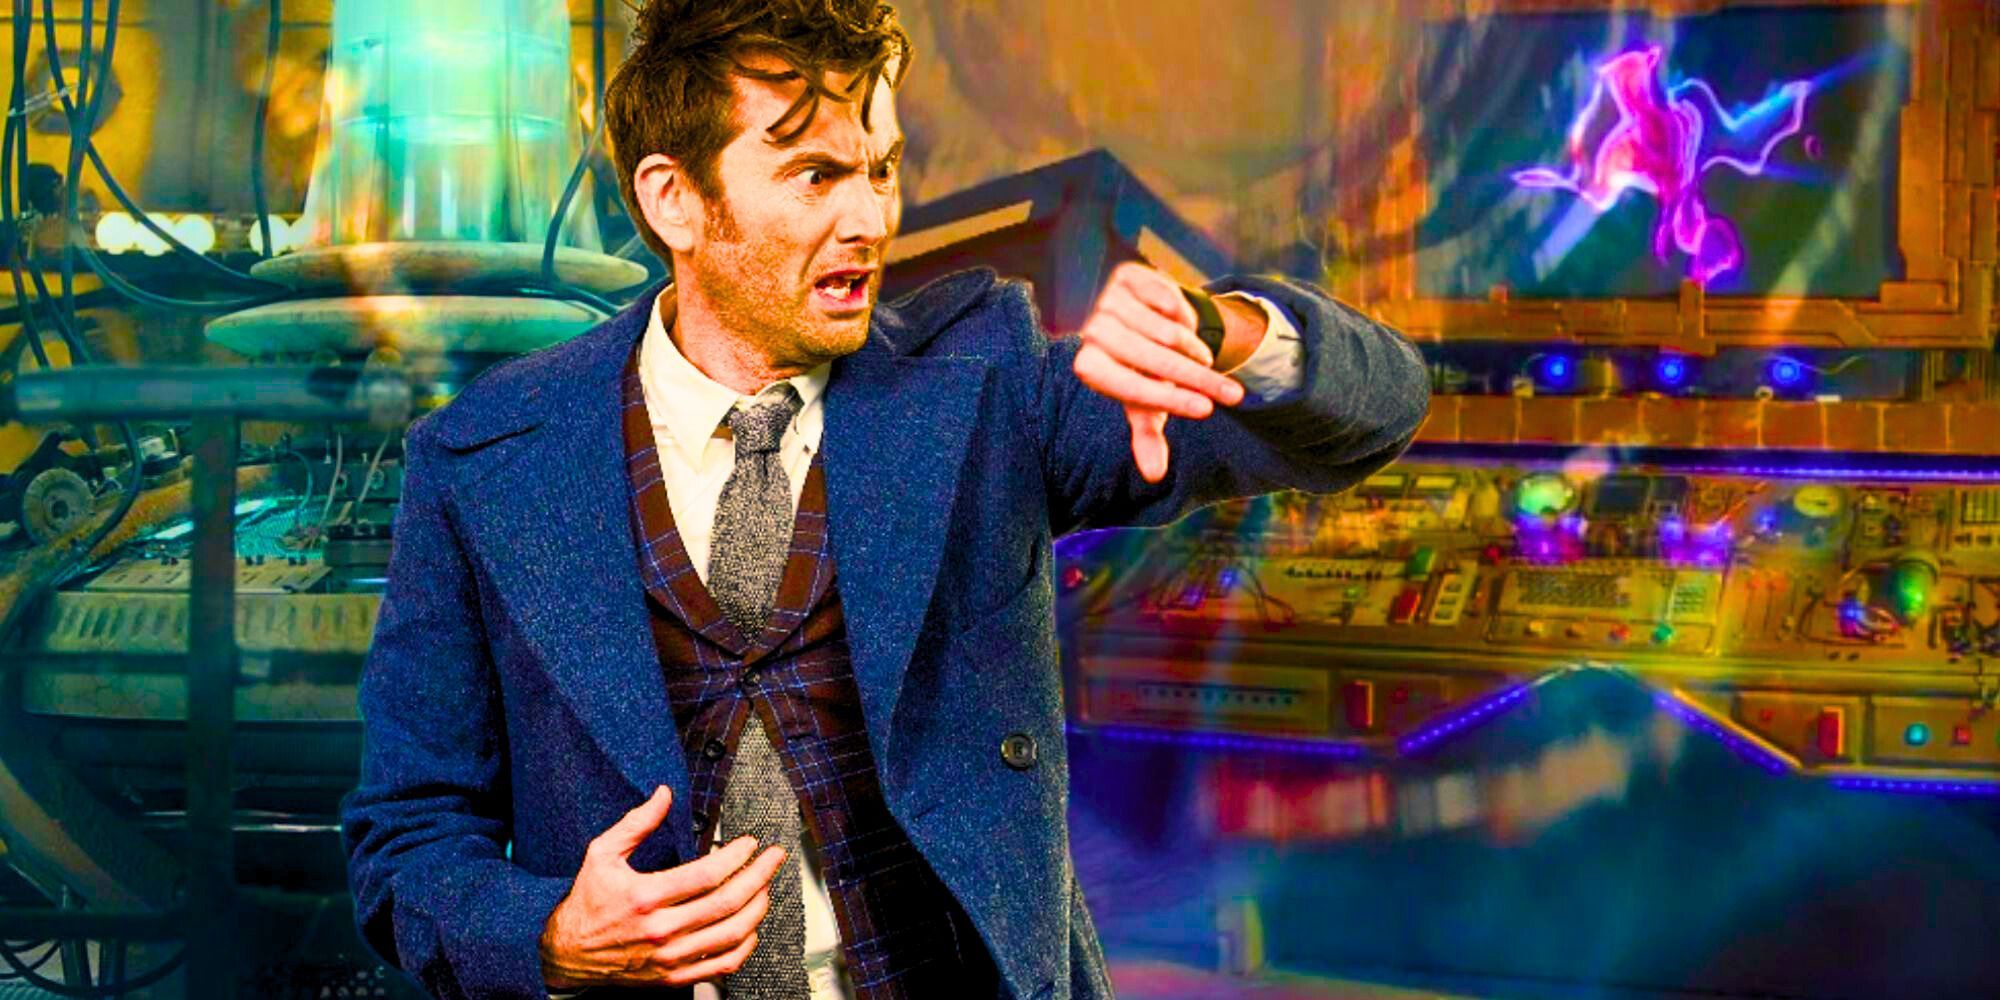 O Décimo Quarto Doutor de David Tennant verificando seu relógio e parecendo confuso contra um cenário misto de Doctor Who